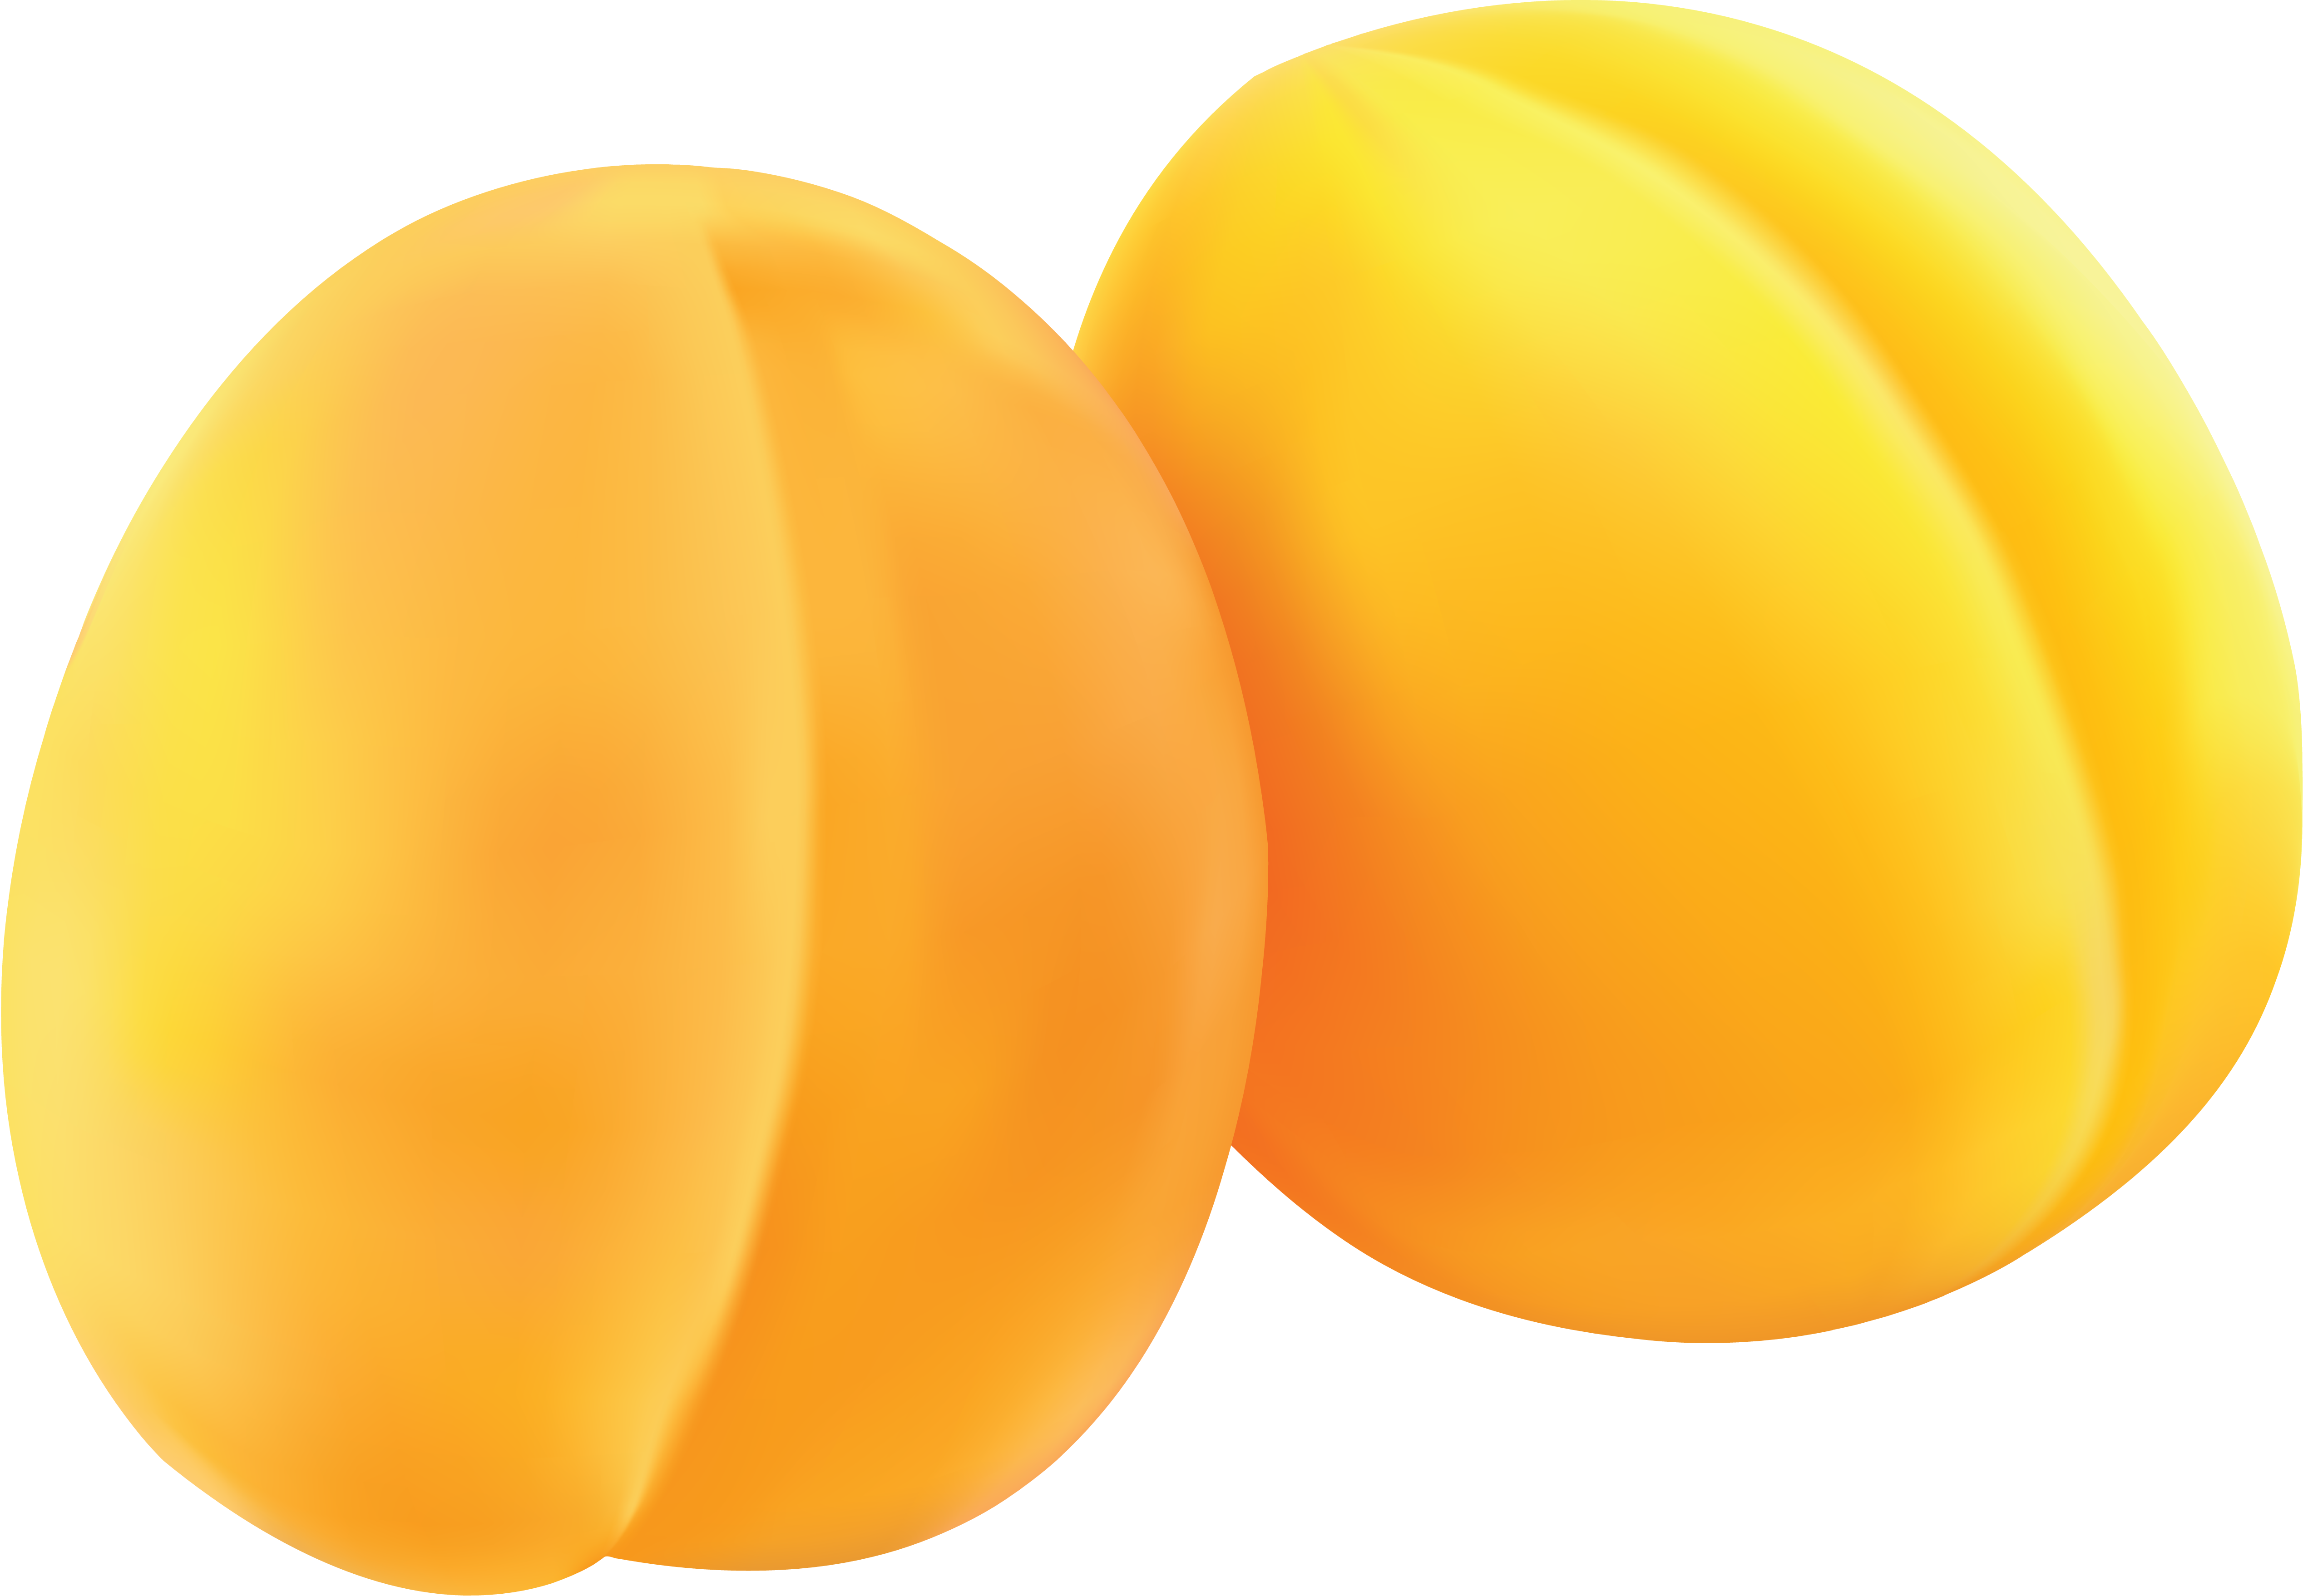 Deux abricots jaunes